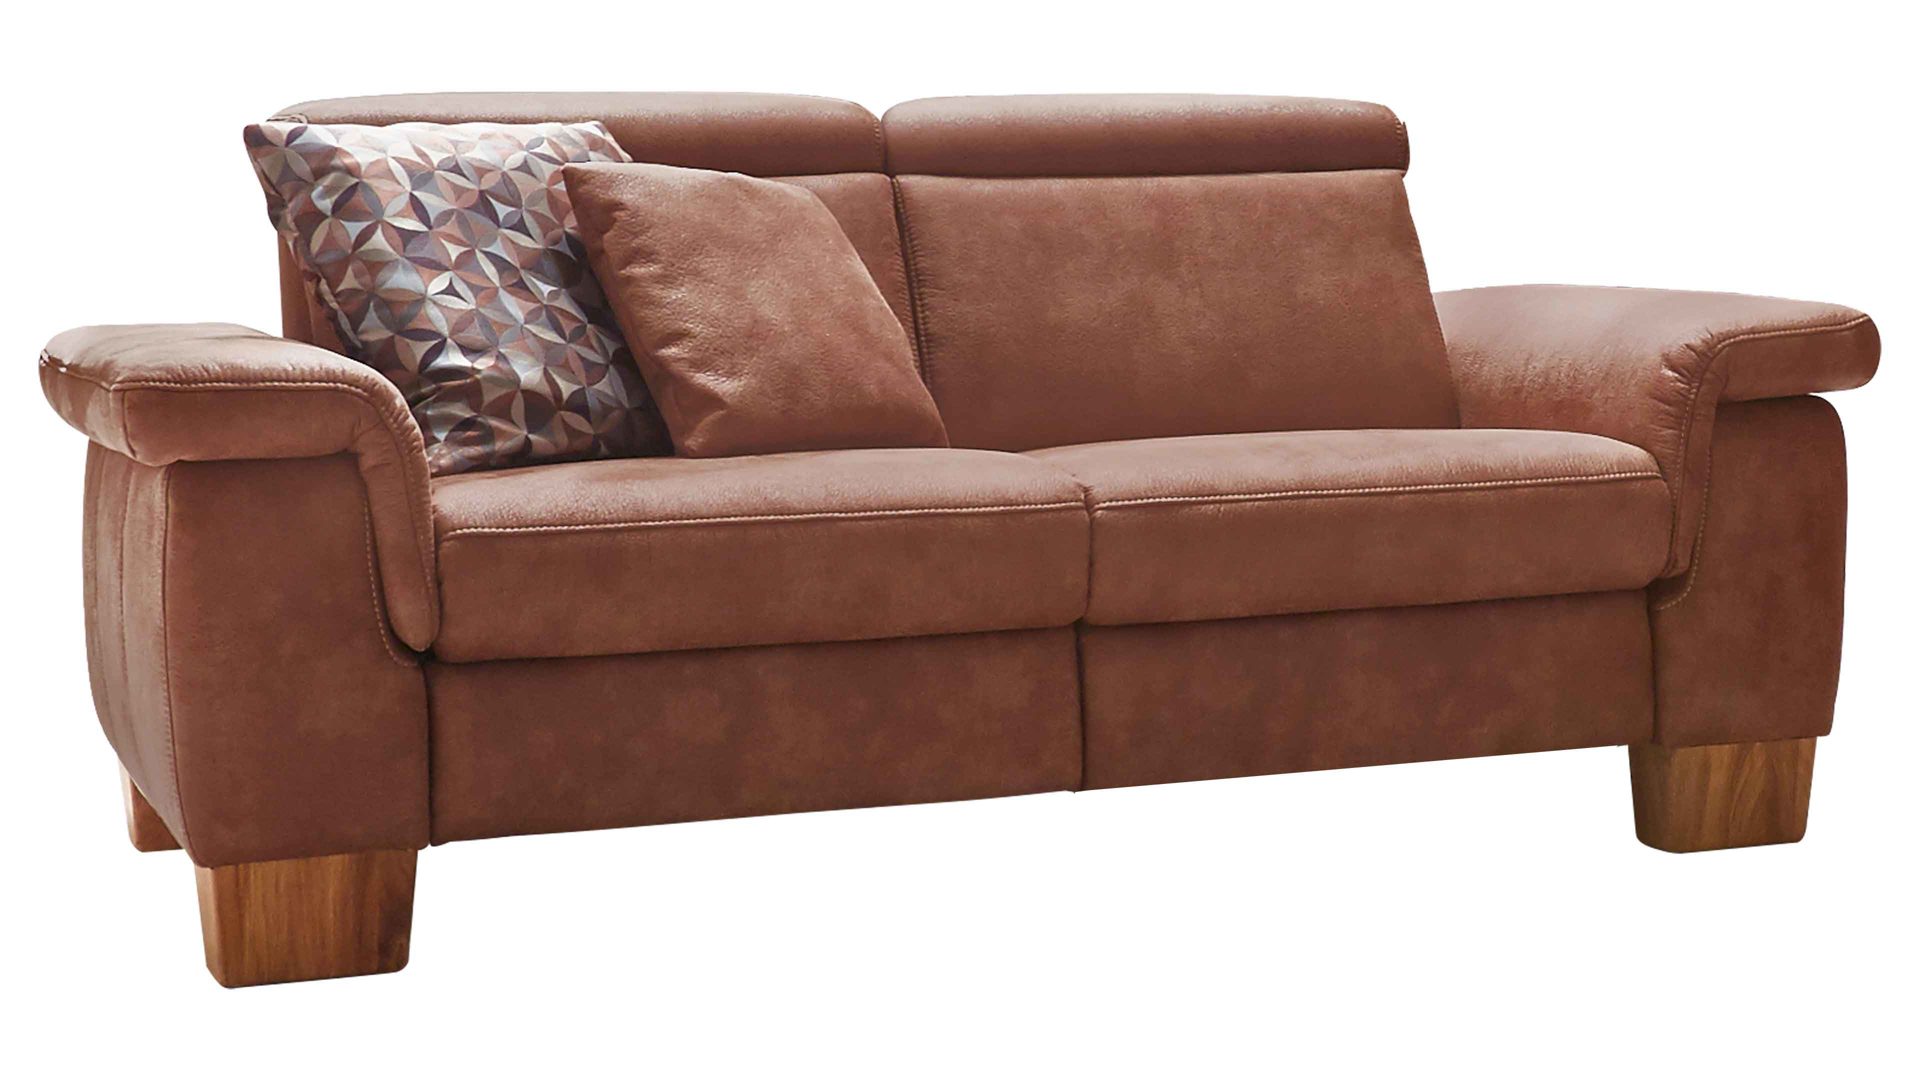 Zweisitzer Steinpol polsteria aus Stoff in Braun Polsterserie Relaxa 6.0 XC - 2,5-Sitzer als Sofa bzw. Couch haselnussfarbene Mikrofaser Büffel & Eichenholzfüße – Länge ca. 187 cm